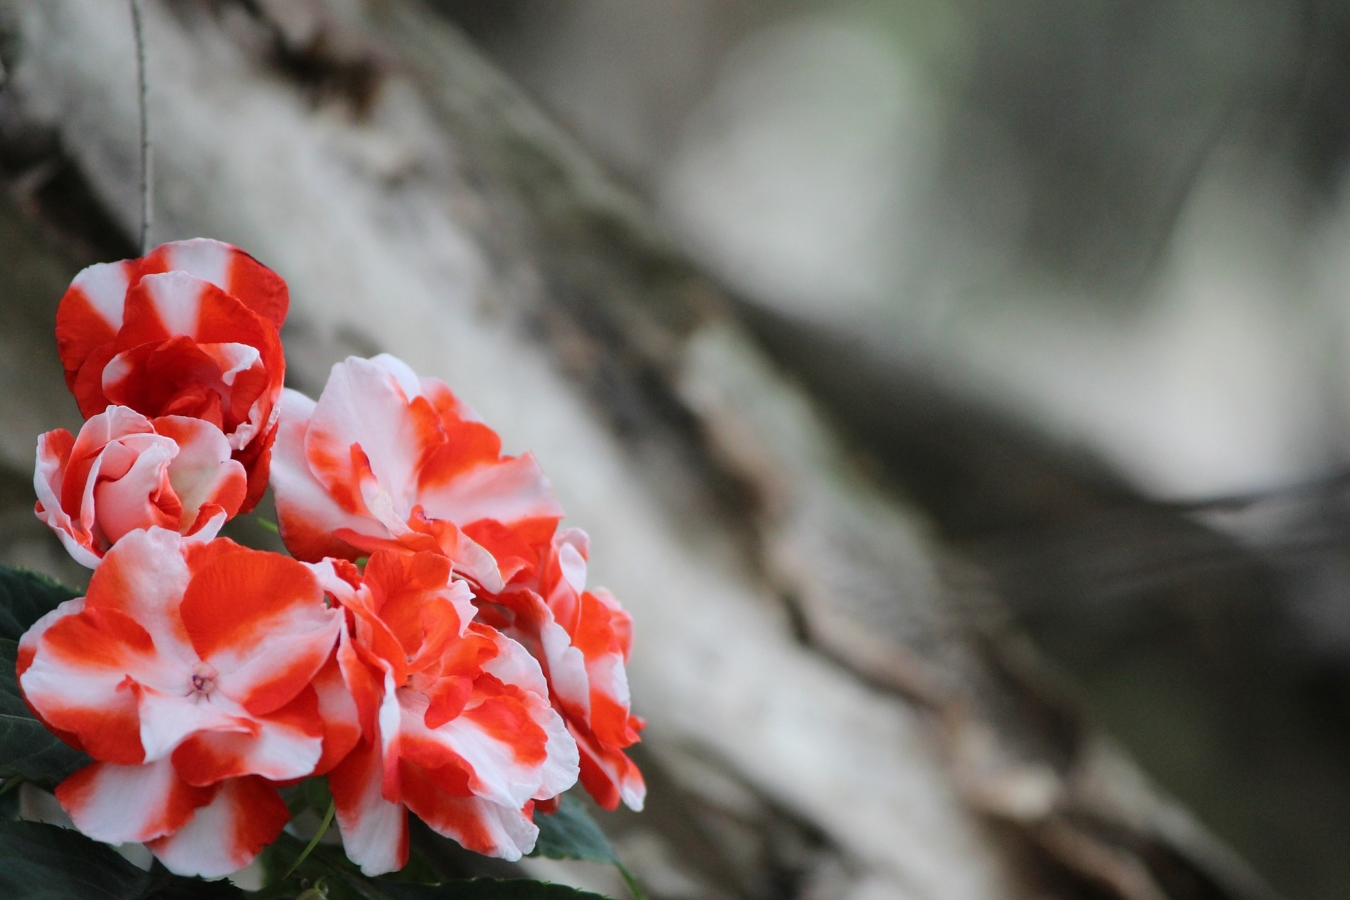 インパチェンスの花言葉の意味 由来 花の特徴や種類 誕生花も紹介 Hanasaku